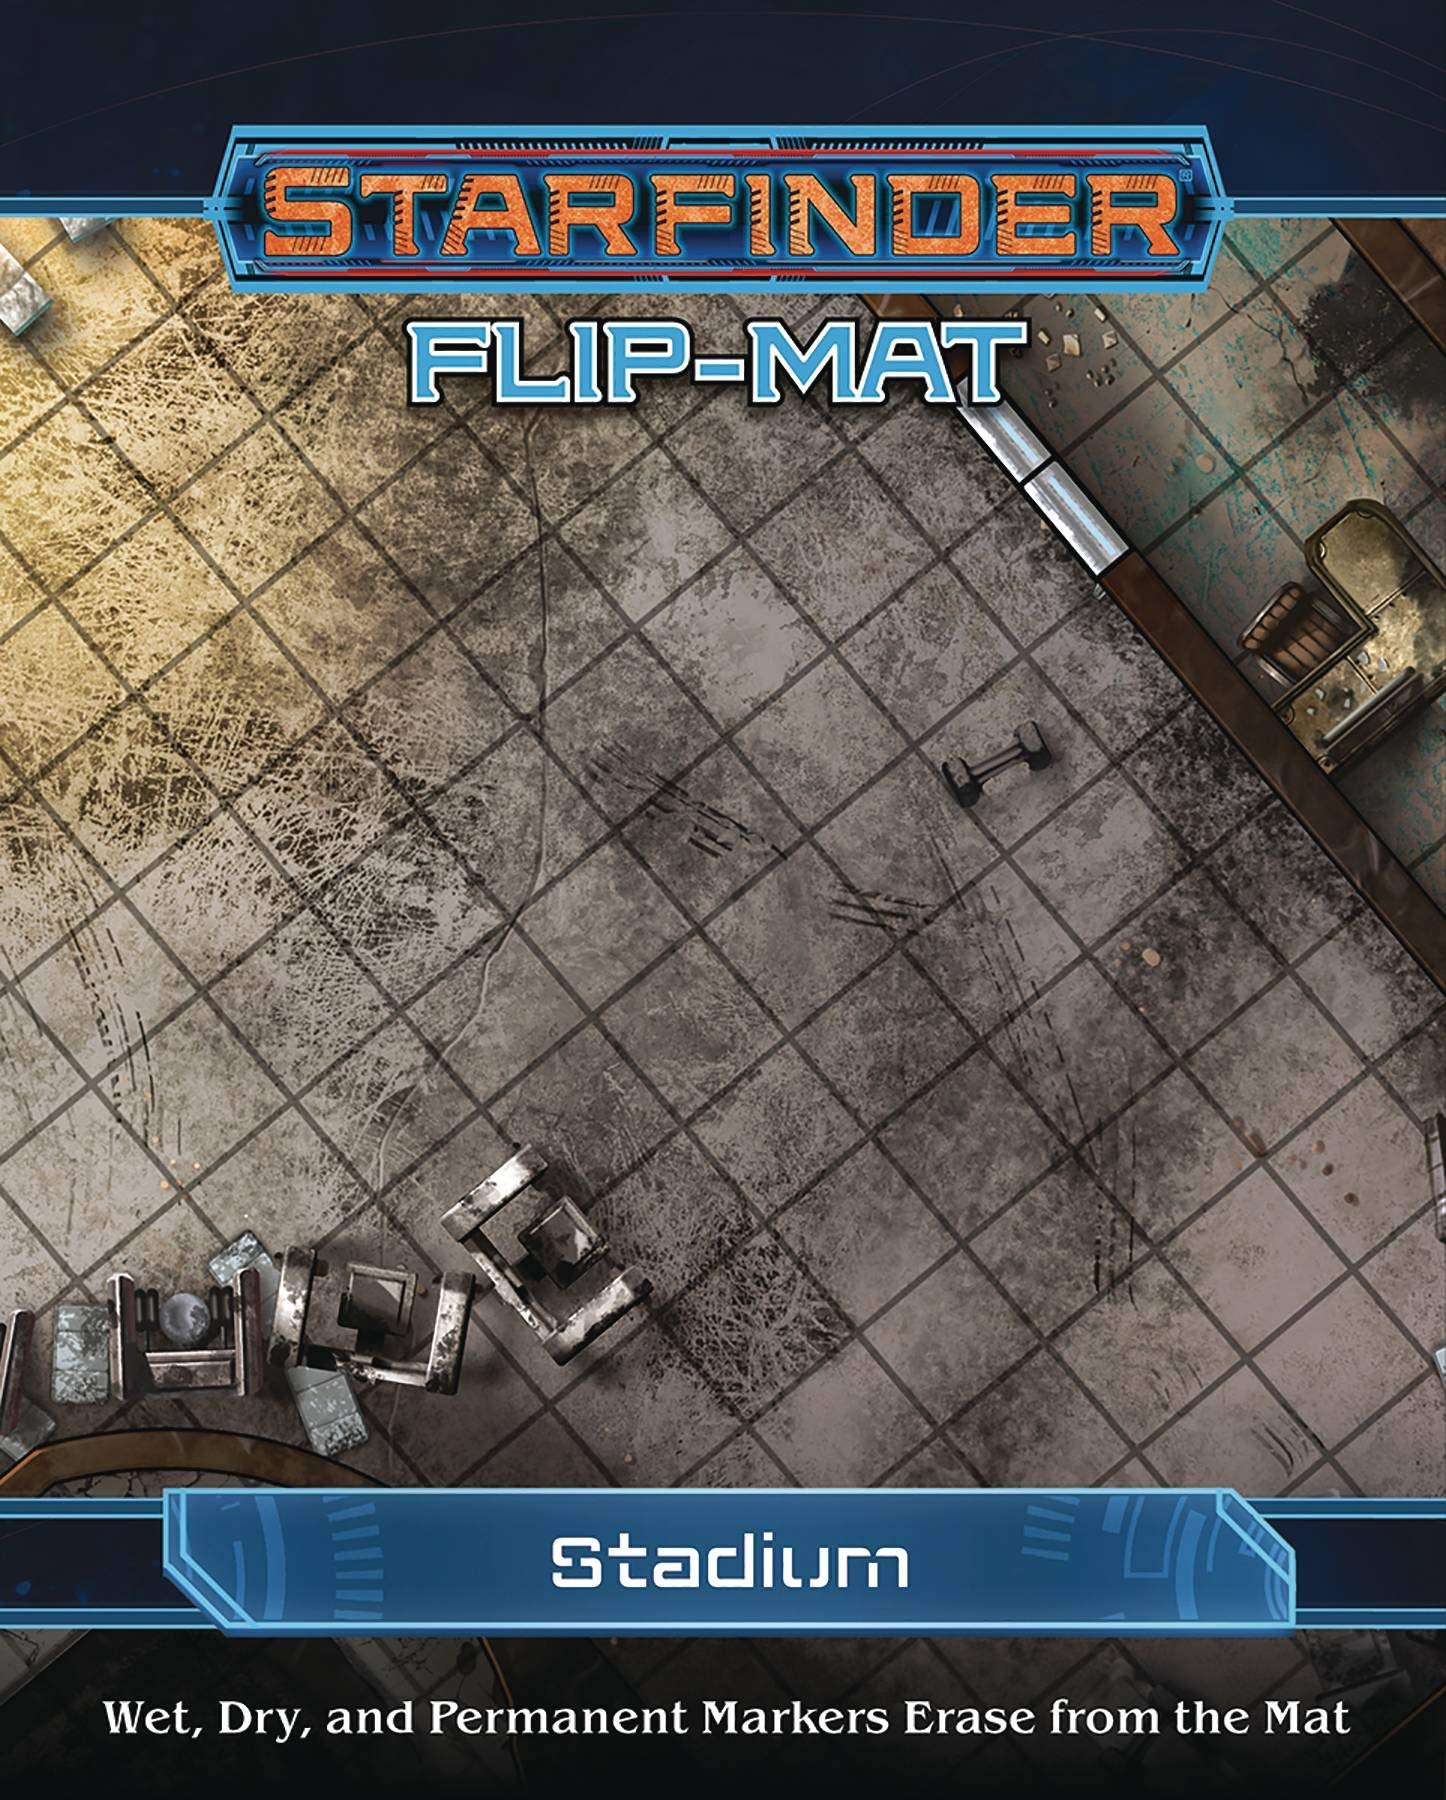 Starfinder Flip-mat : Stadium | Gamer Loot